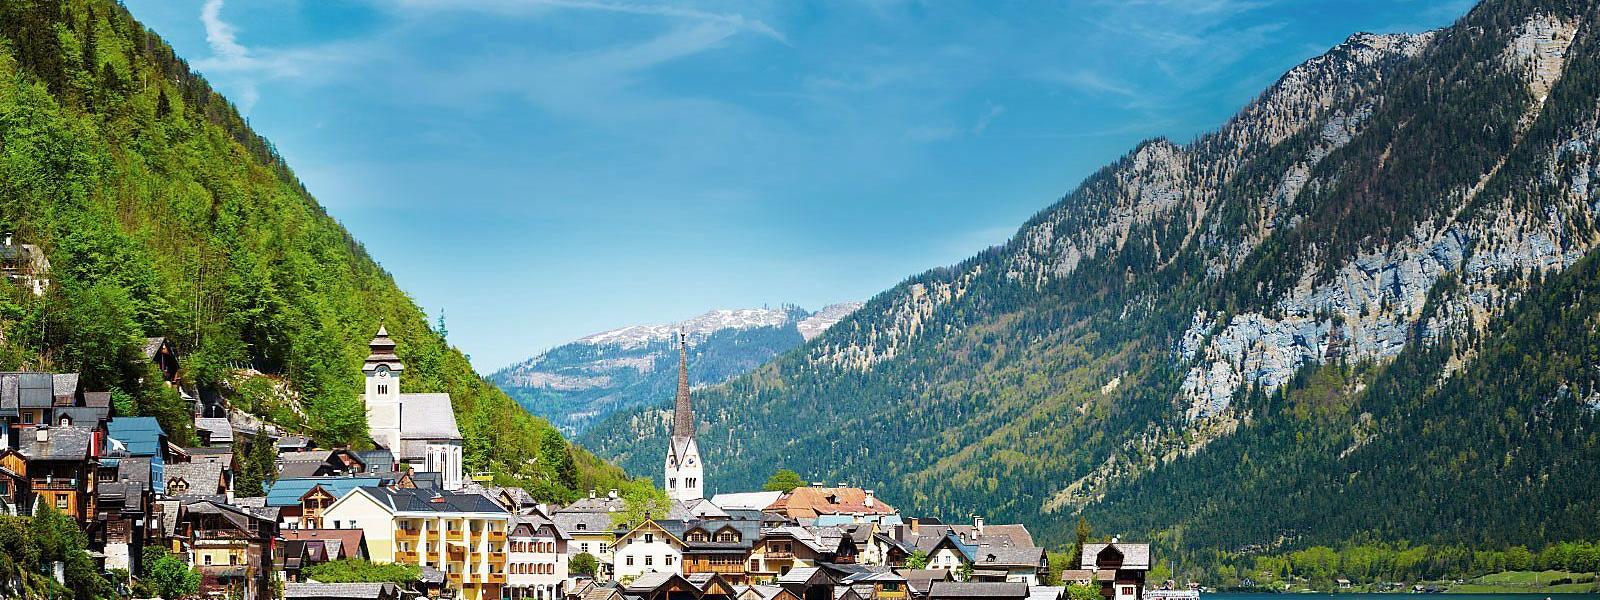 Naturnahe Ferien im Salzburger Land mit Fewos und Ferienhäusern in Leogang - e-domizil